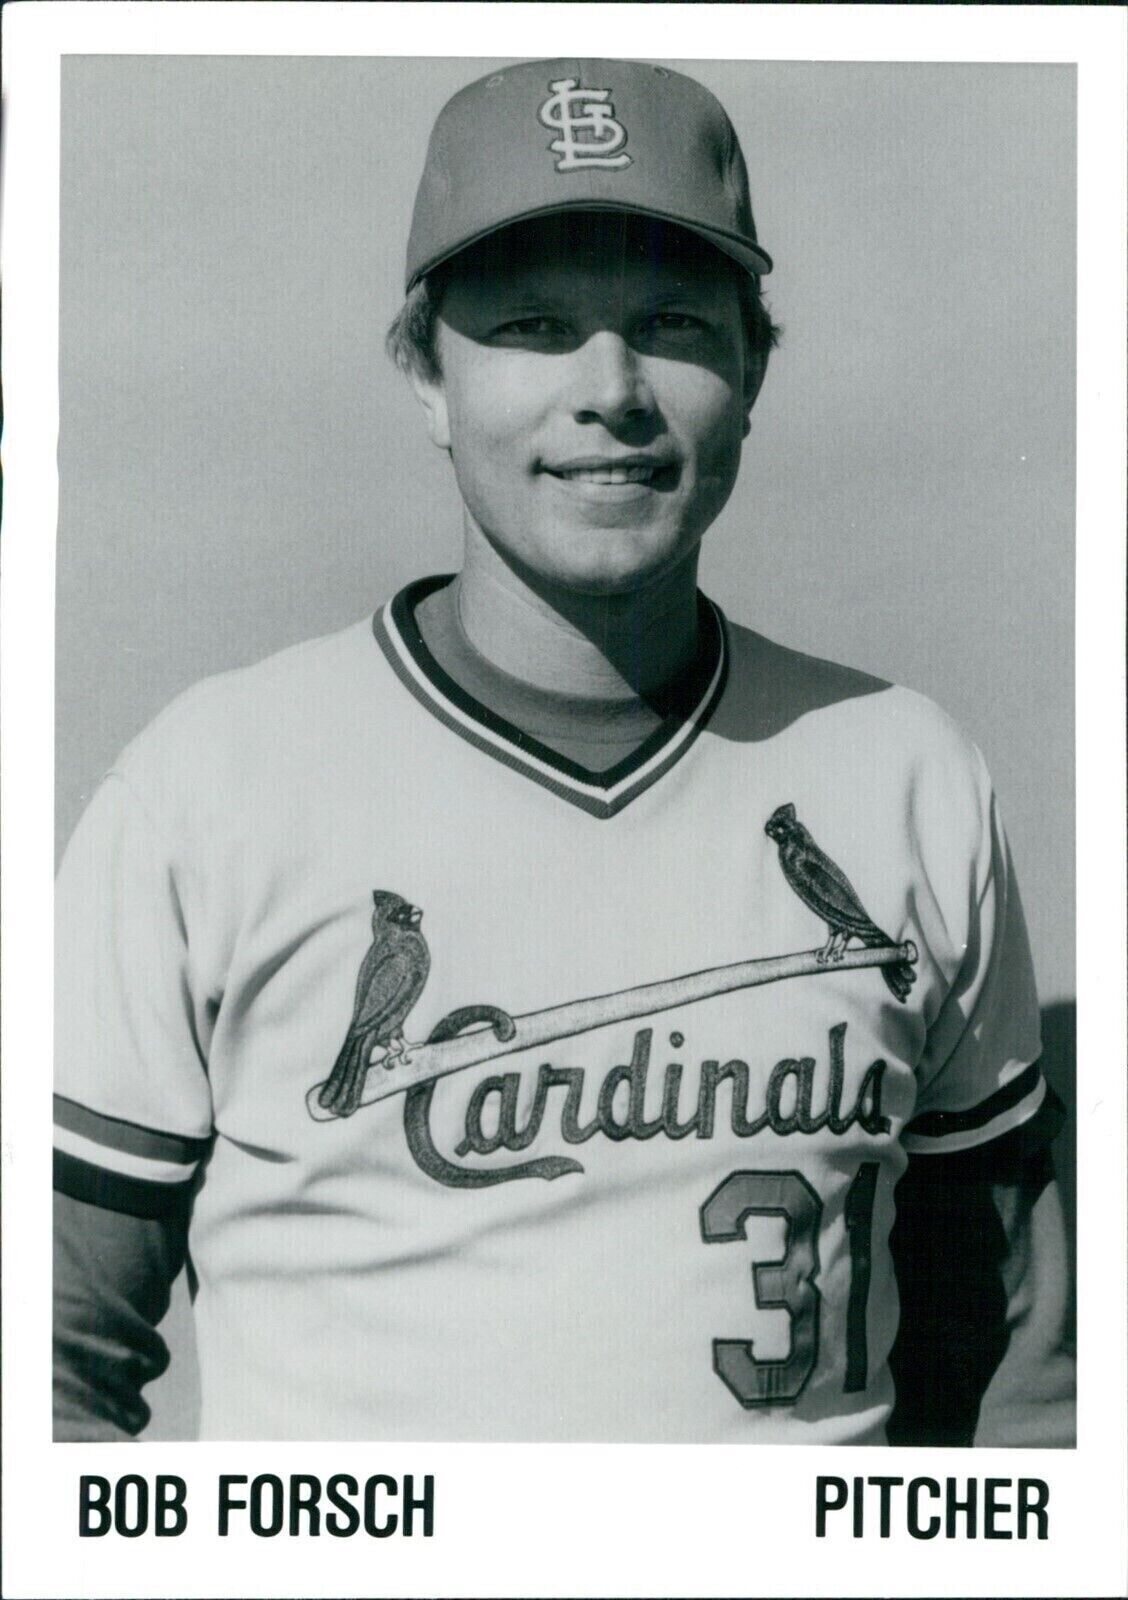 1982 Bob Forsch St Louis Cardinals Major League Pitcher Ball Sports 5X7 Photo